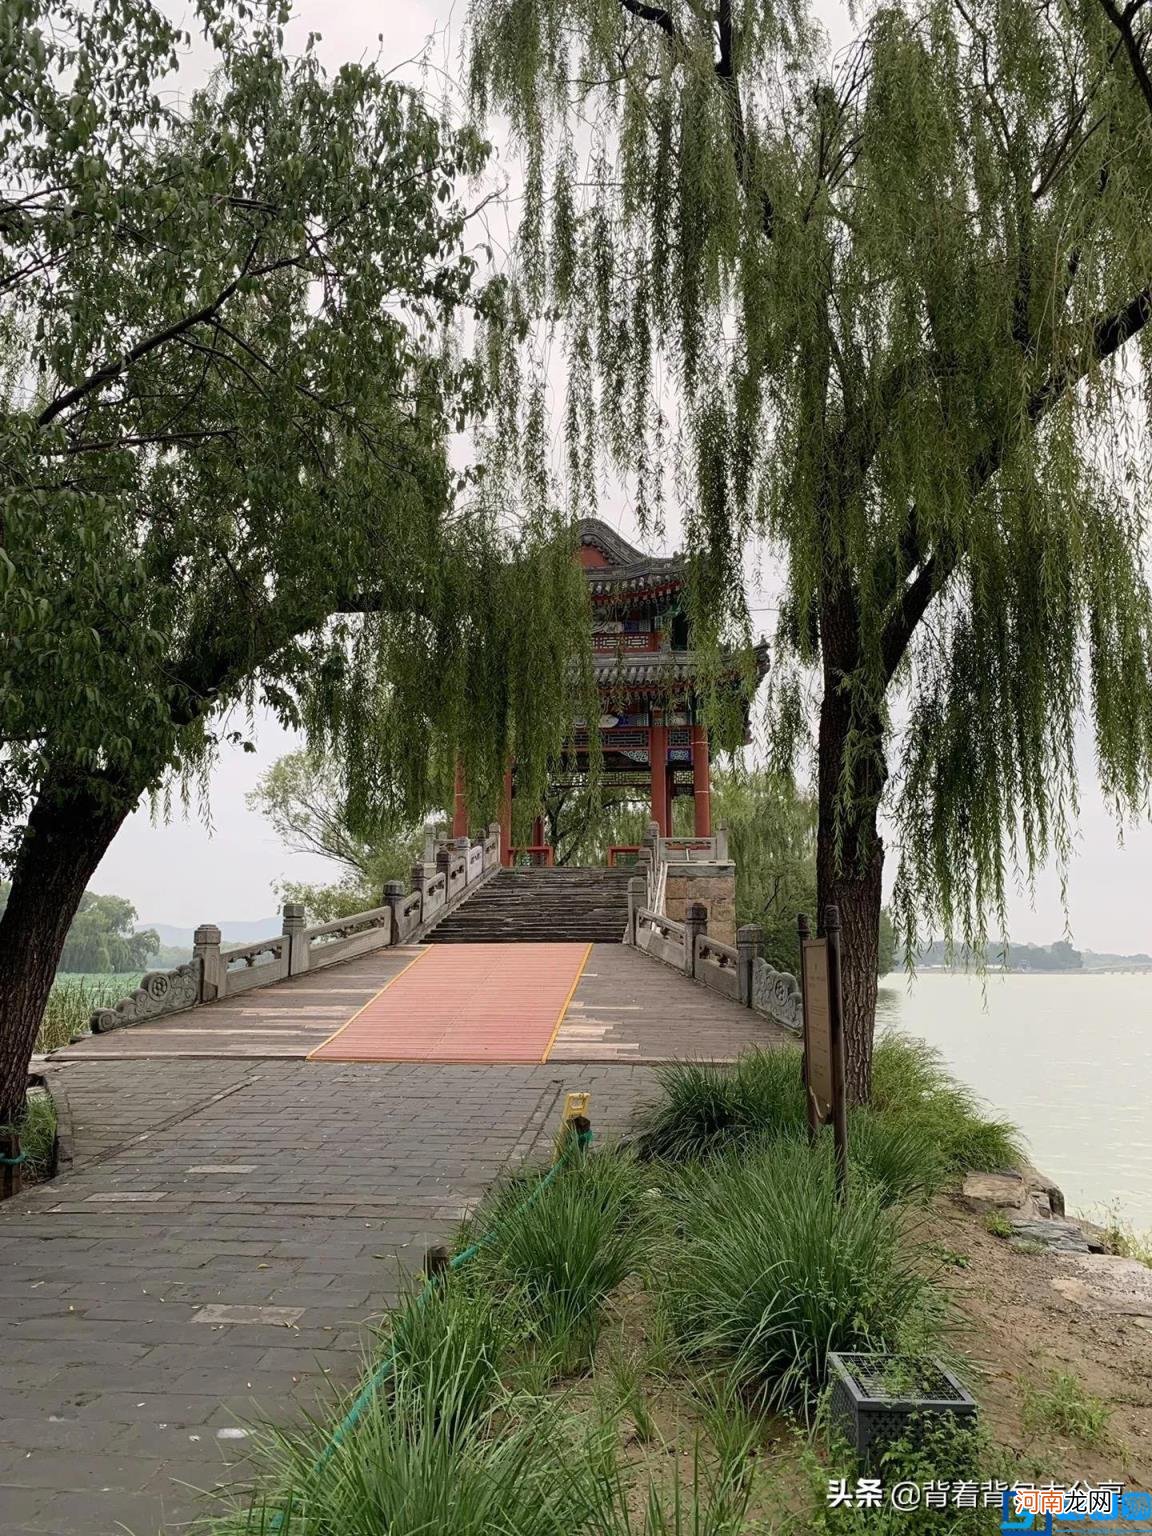 北京郊游攻略10个好玩景点推荐 北京旅游攻略必去景点